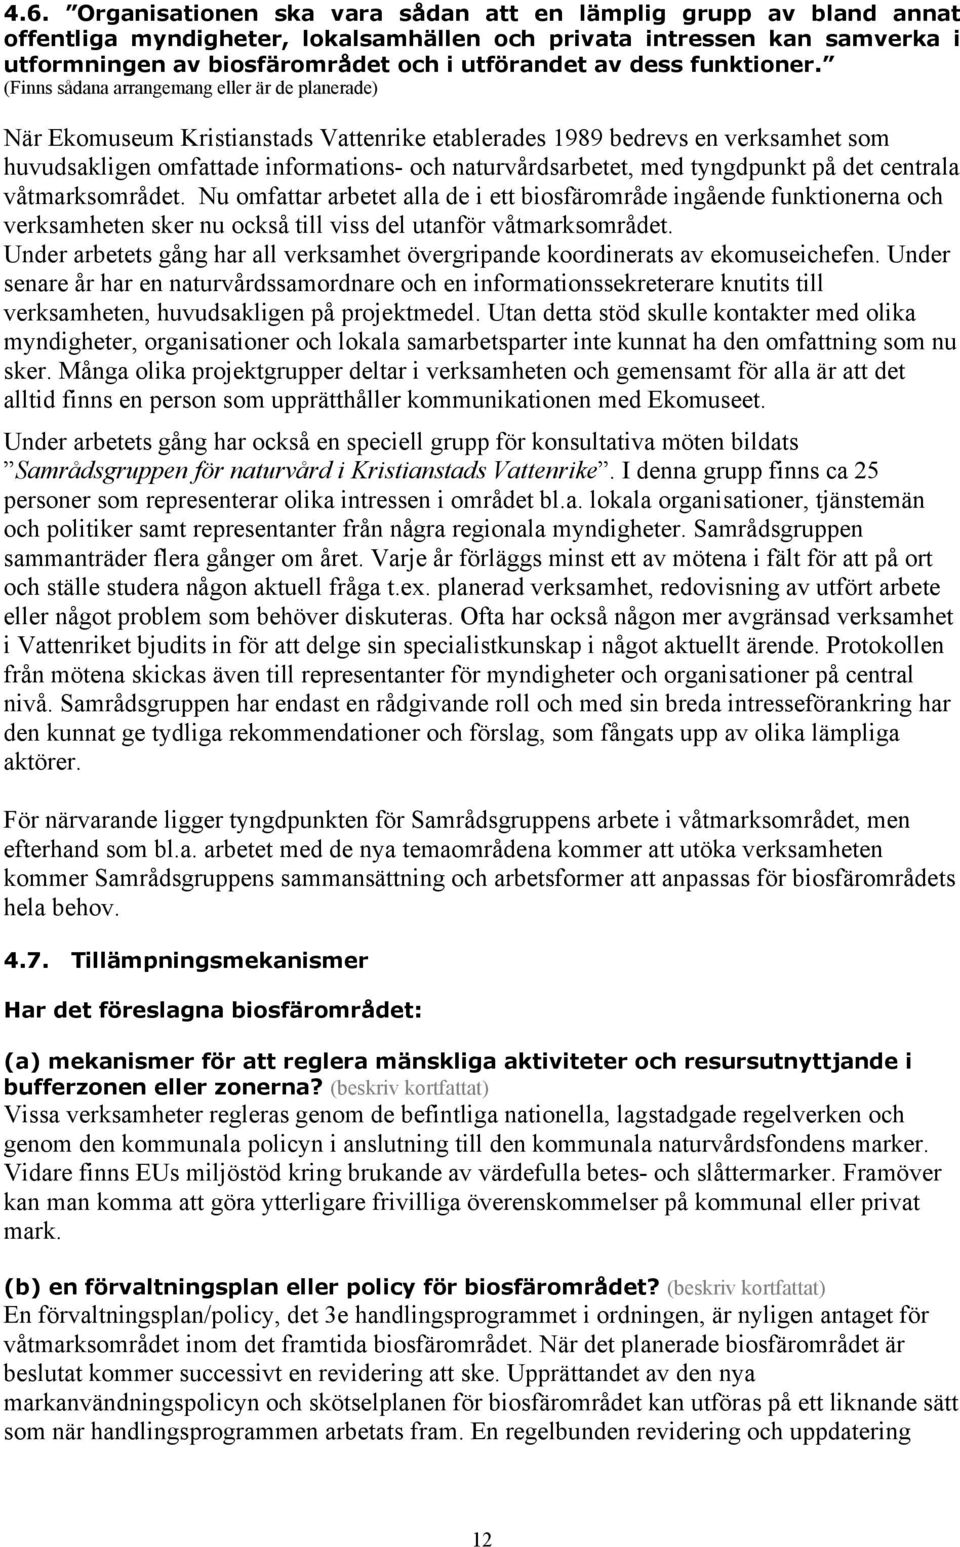 (Finns sådana arrangemang eller är de planerade) När Ekomuseum Kristianstads Vattenrike etablerades 1989 bedrevs en verksamhet som huvudsakligen omfattade informations- och naturvårdsarbetet, med